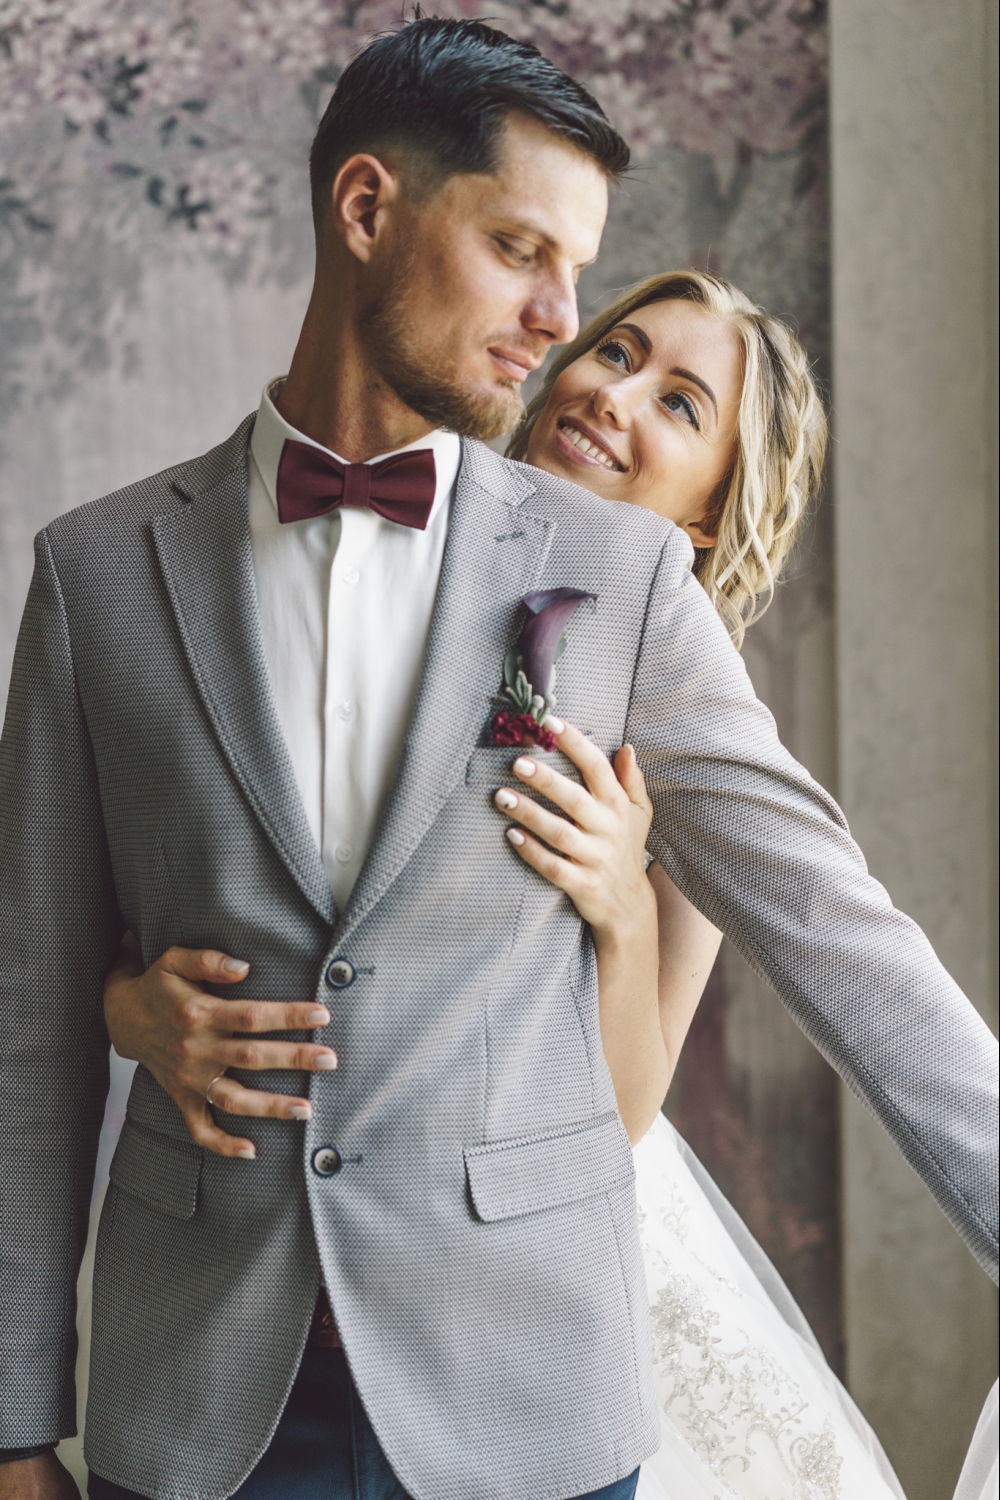 Свадебные костюмы для мужчин и женщин